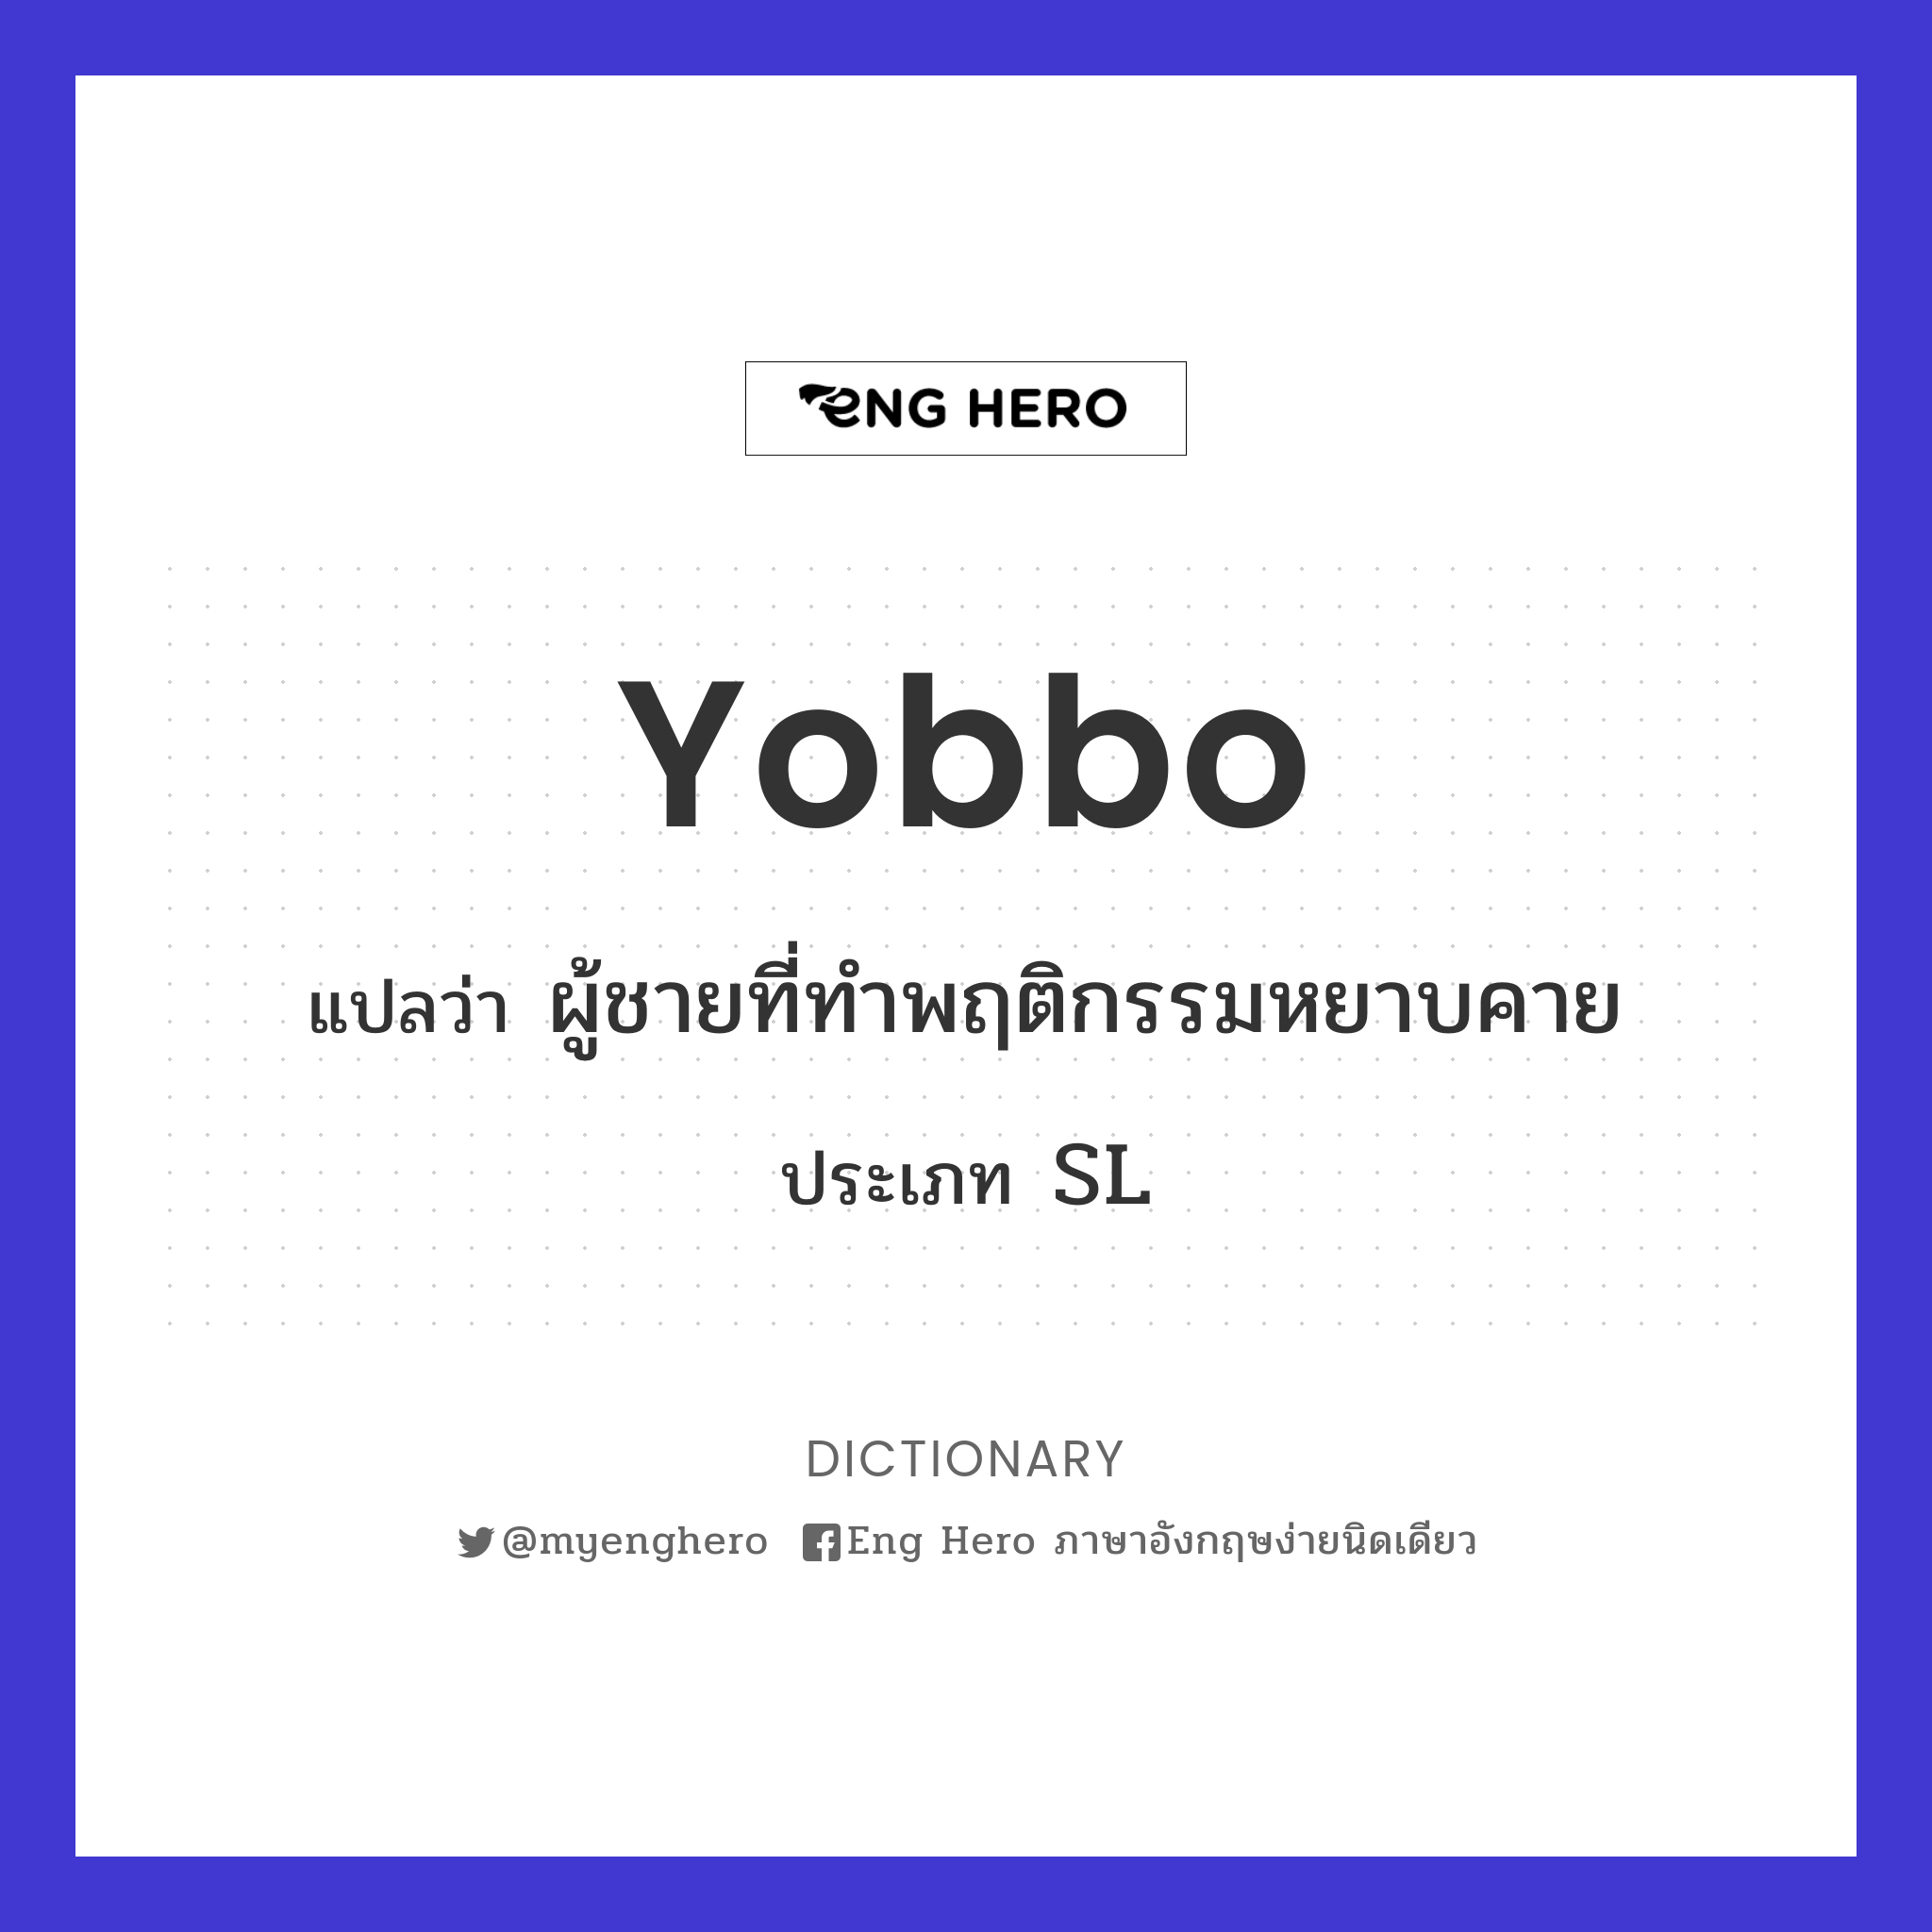 yobbo